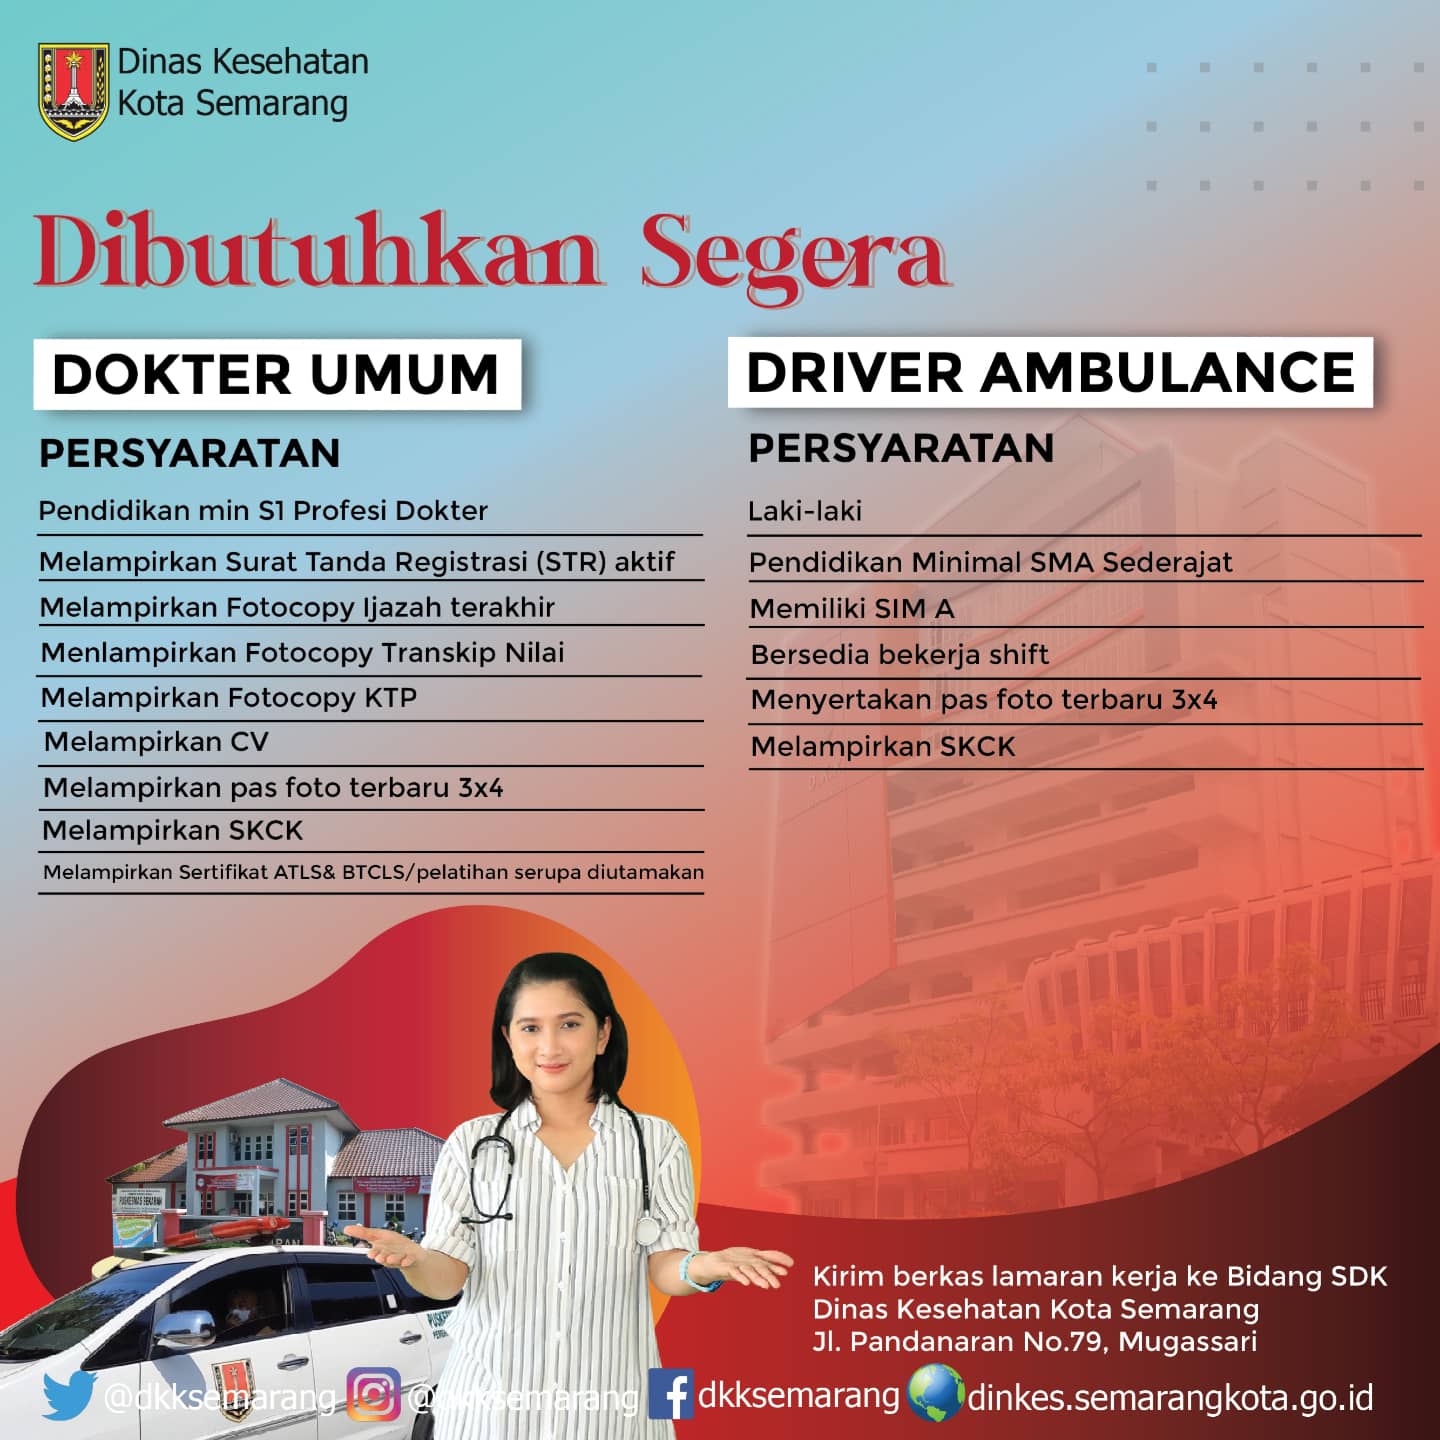 Lowongan pekerjaan di Dinas Kesehatan Kota Semarang